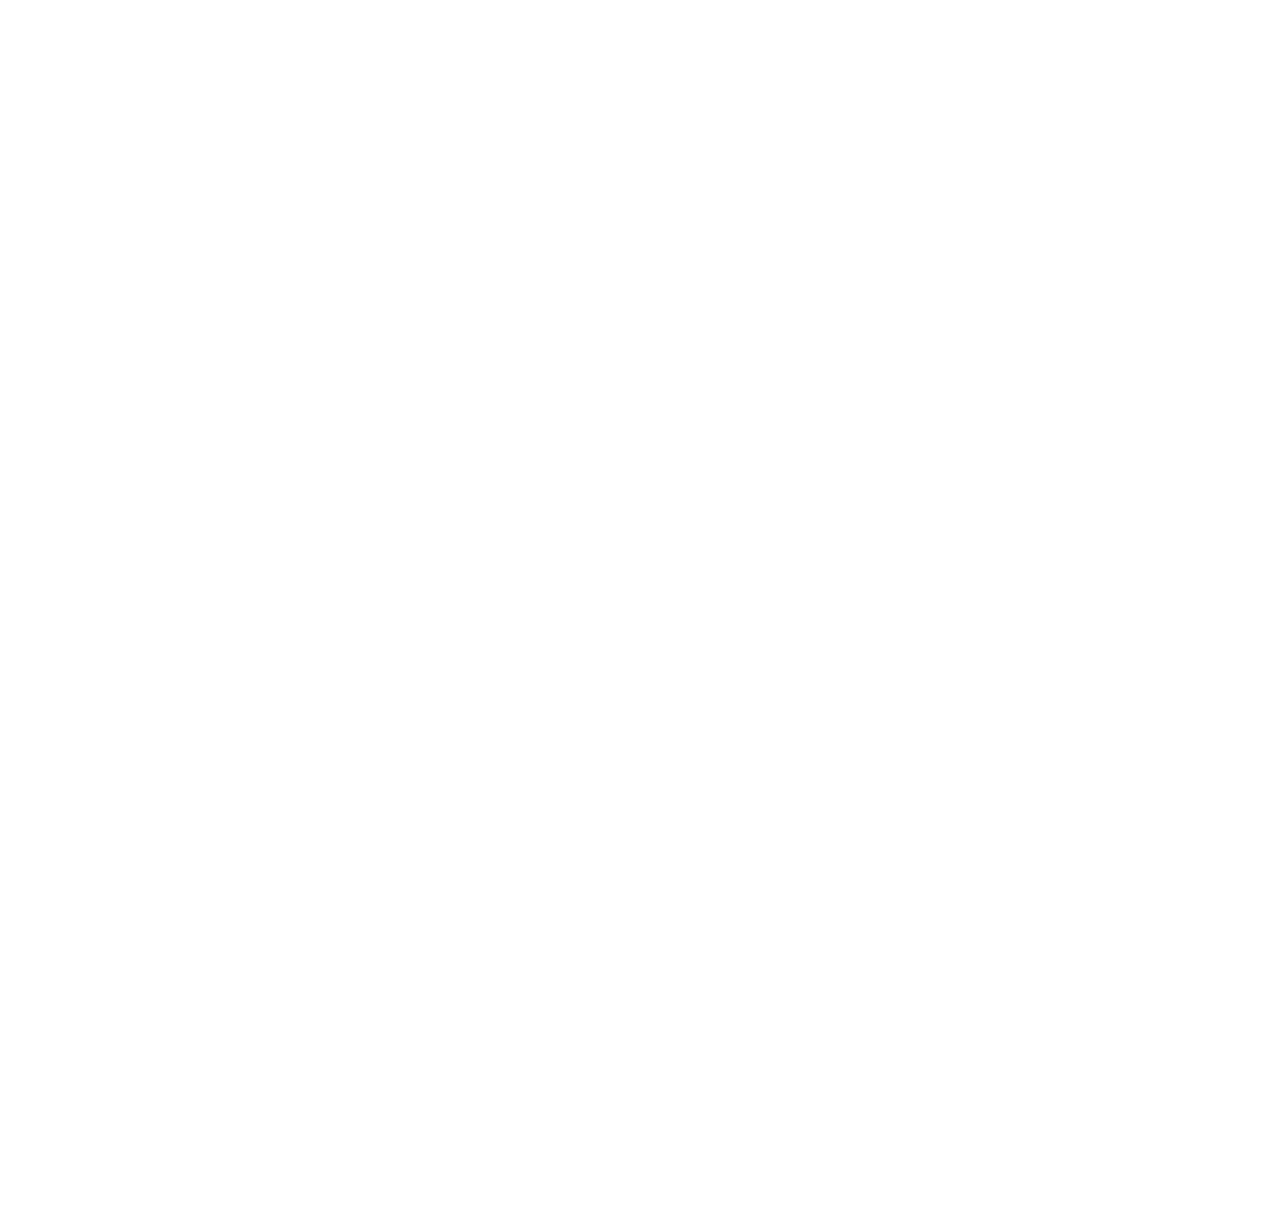 BXR DAIOS COVE WHT